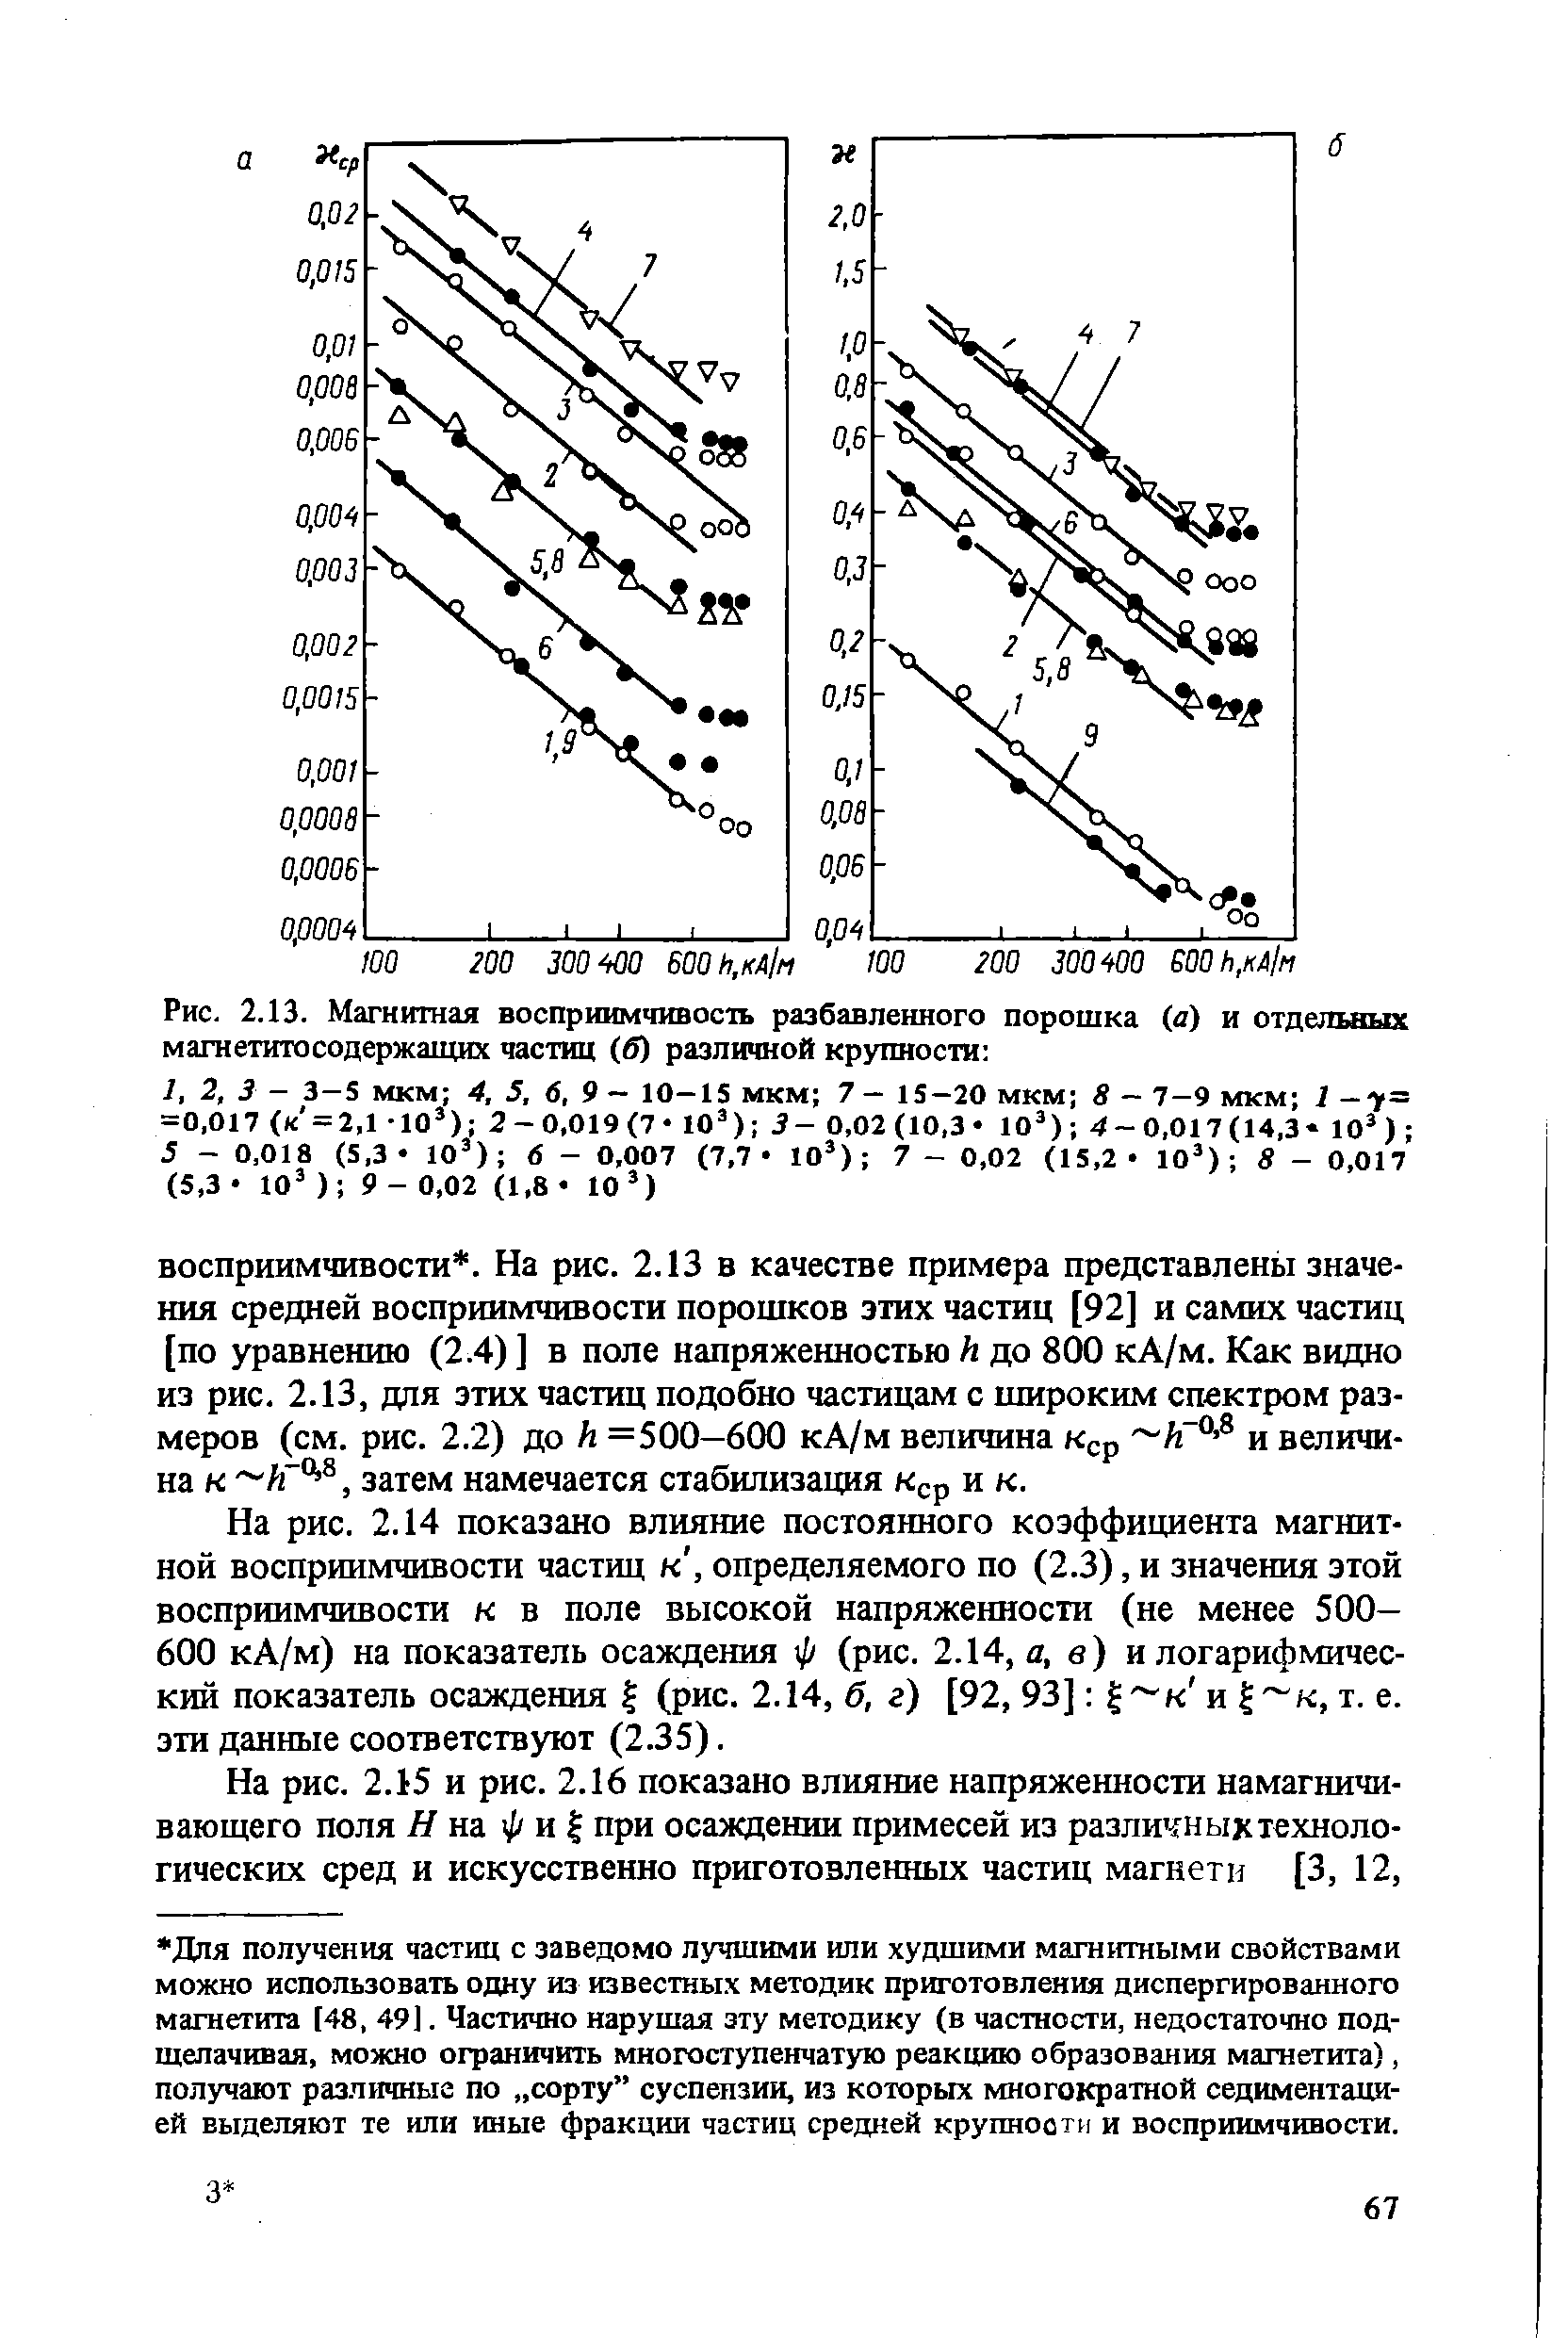 На рис. 2.14 показано влияние постоянного коэффициента магнитной восприимчивости частиц к, определяемого по (2.3), и значения этой восприимчивости к в поле высокой напряженности (не менее 500— 600 кА/м) на показатель осаждения ф (рис. 2.14, д, в) и логарифмический показатель осаждения % (рис. 2.14, б, г) [92, 93] к и % к, т. е. эти данные соответствуют (2.35).